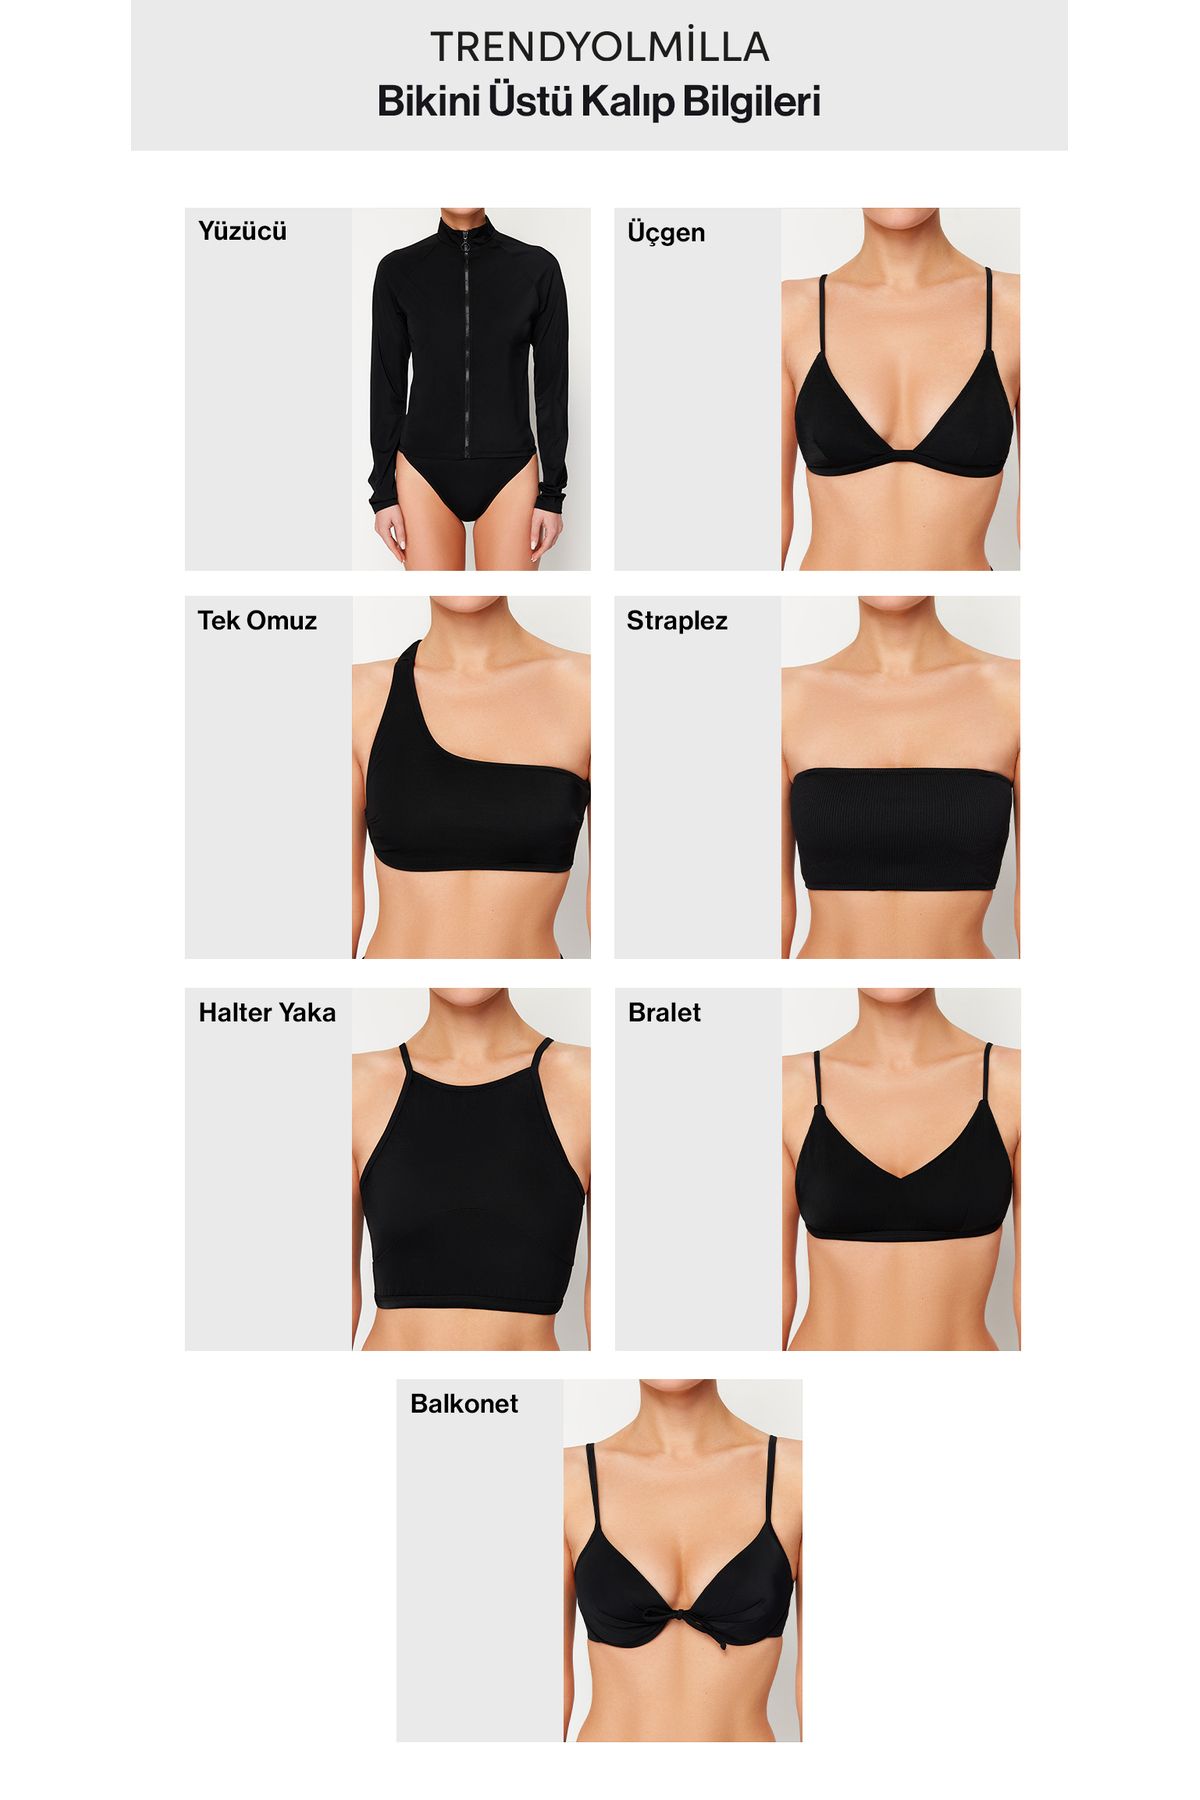 BİKİNİNCİ Tightening Bikini Set with Shorts - Trendyol